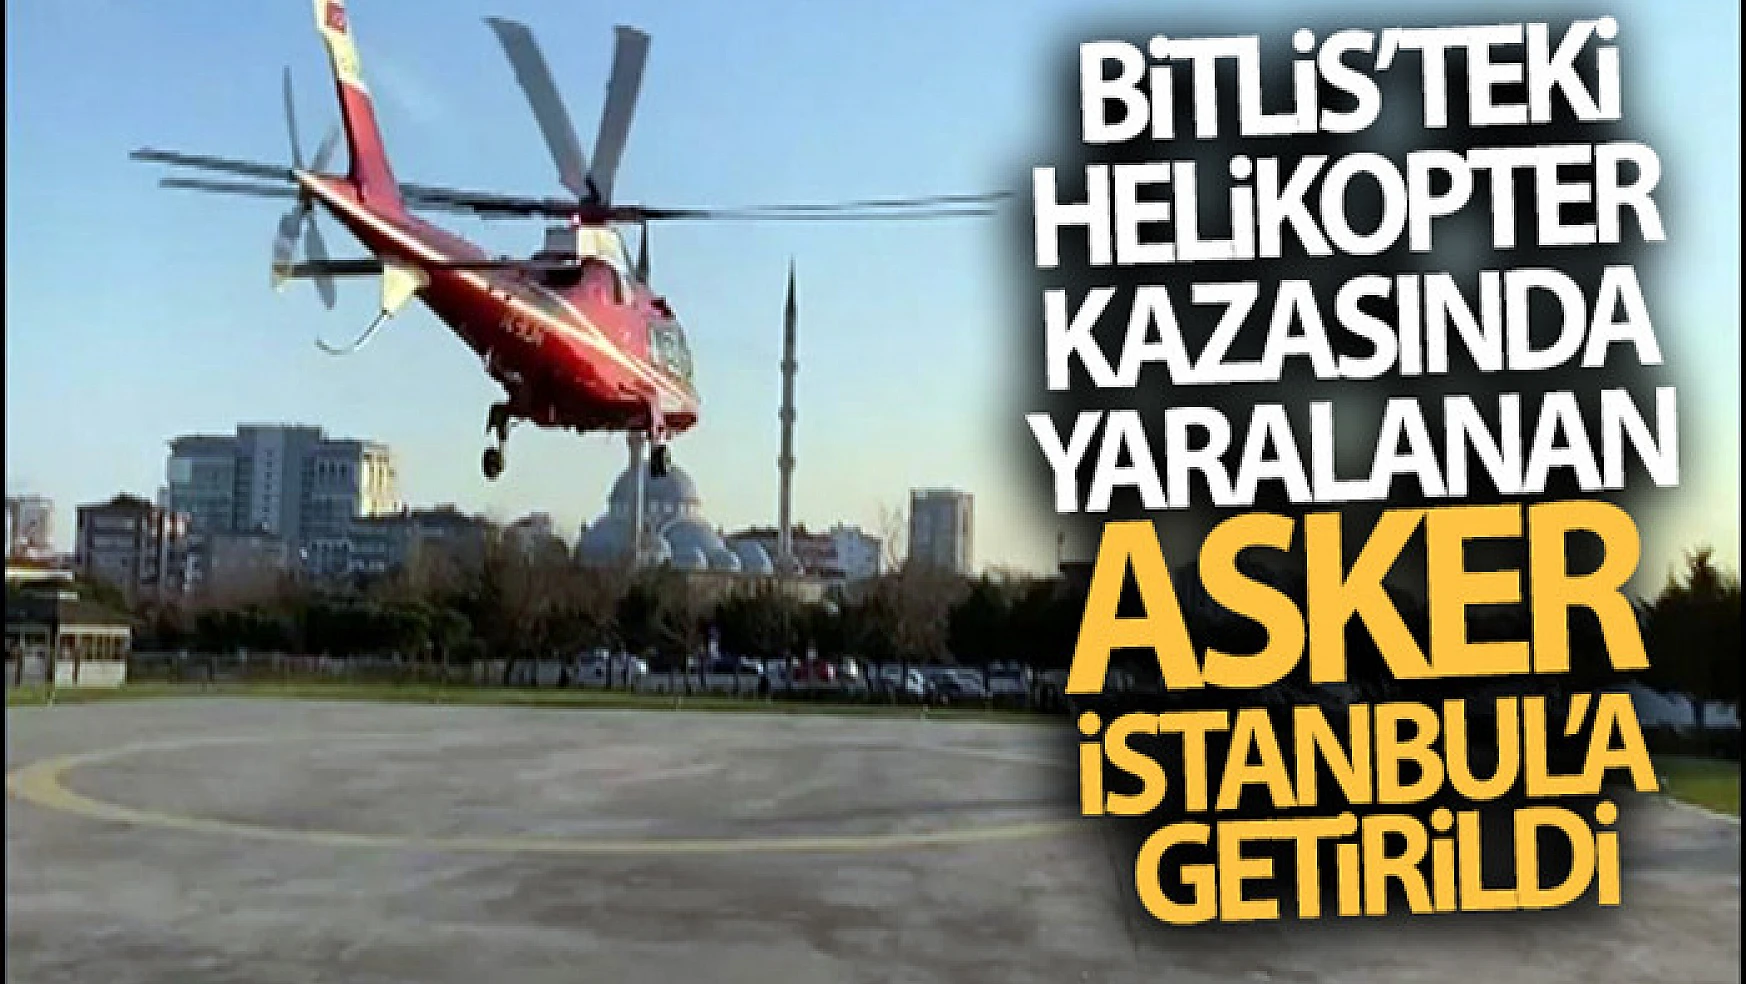 Bitlis'teki helikopter kazasında yaralanan asker İstanbul'a getirildi